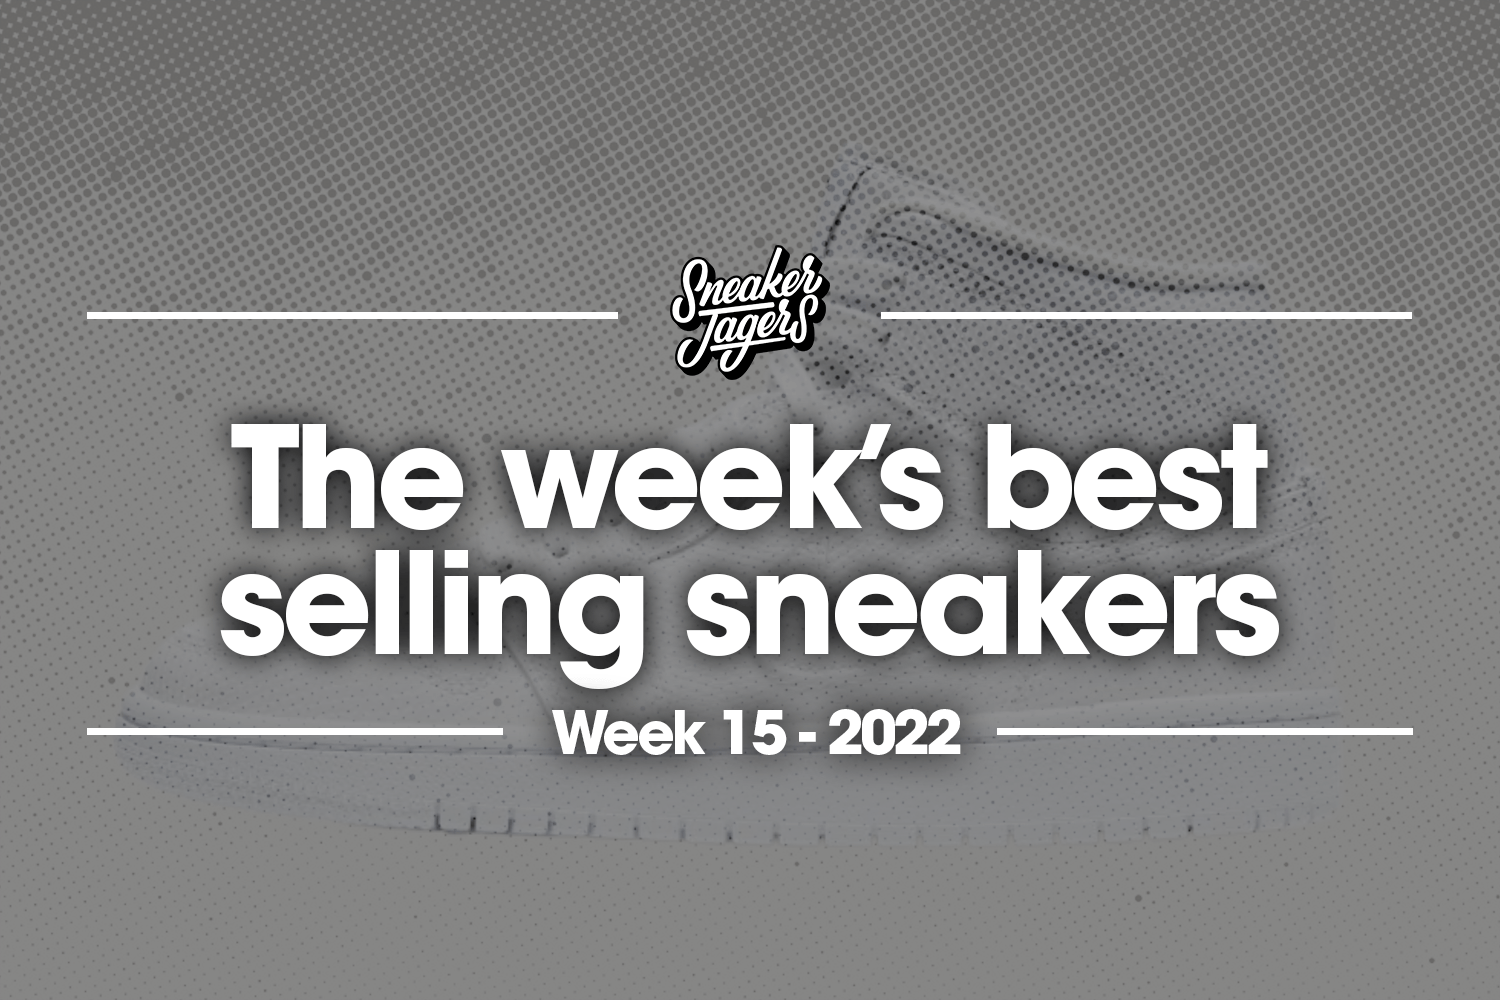 The 5 best-selling sneakers of week 15